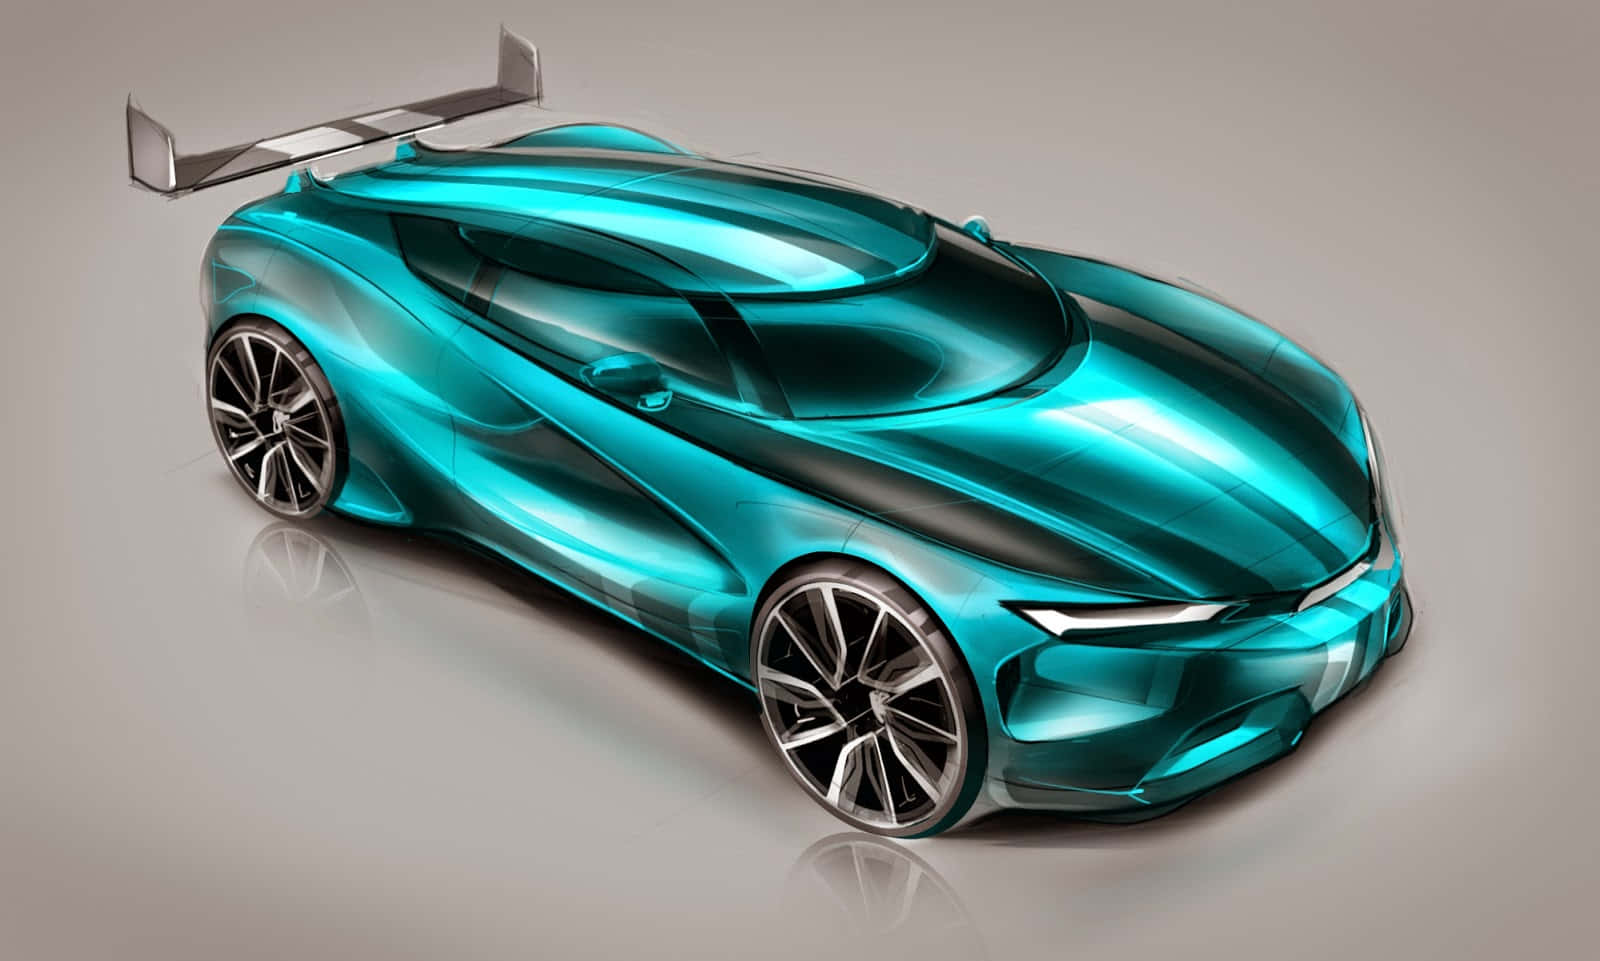 Futuristic Innovative Car Design Concept Wallpaper